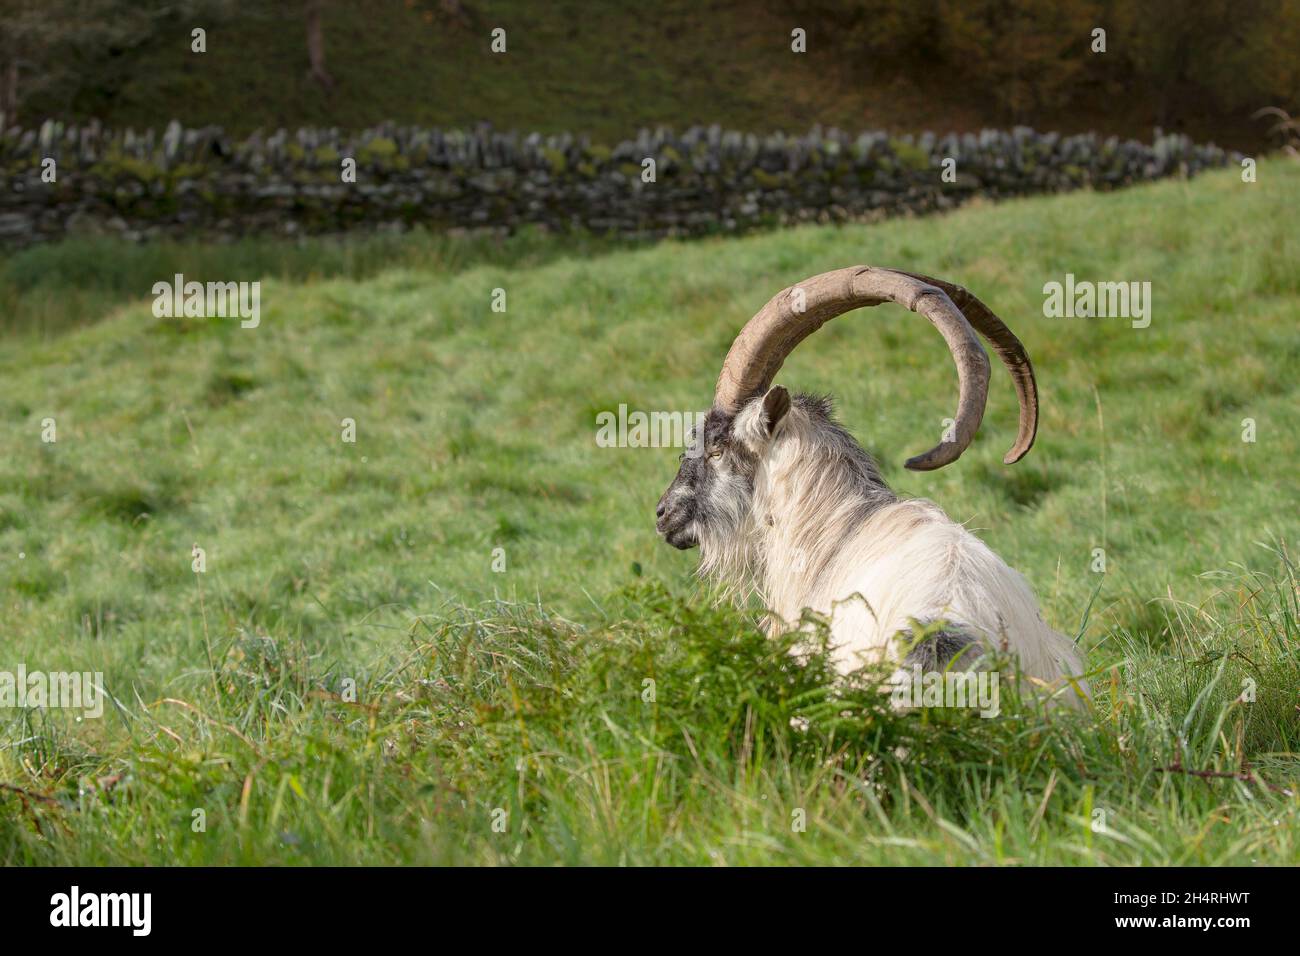 Vista laterale di selvaggio, maschio, gallese capra di montagna isolato all'aperto, seduto in erba lunga che mostra le sue corna lunghe. Foto Stock